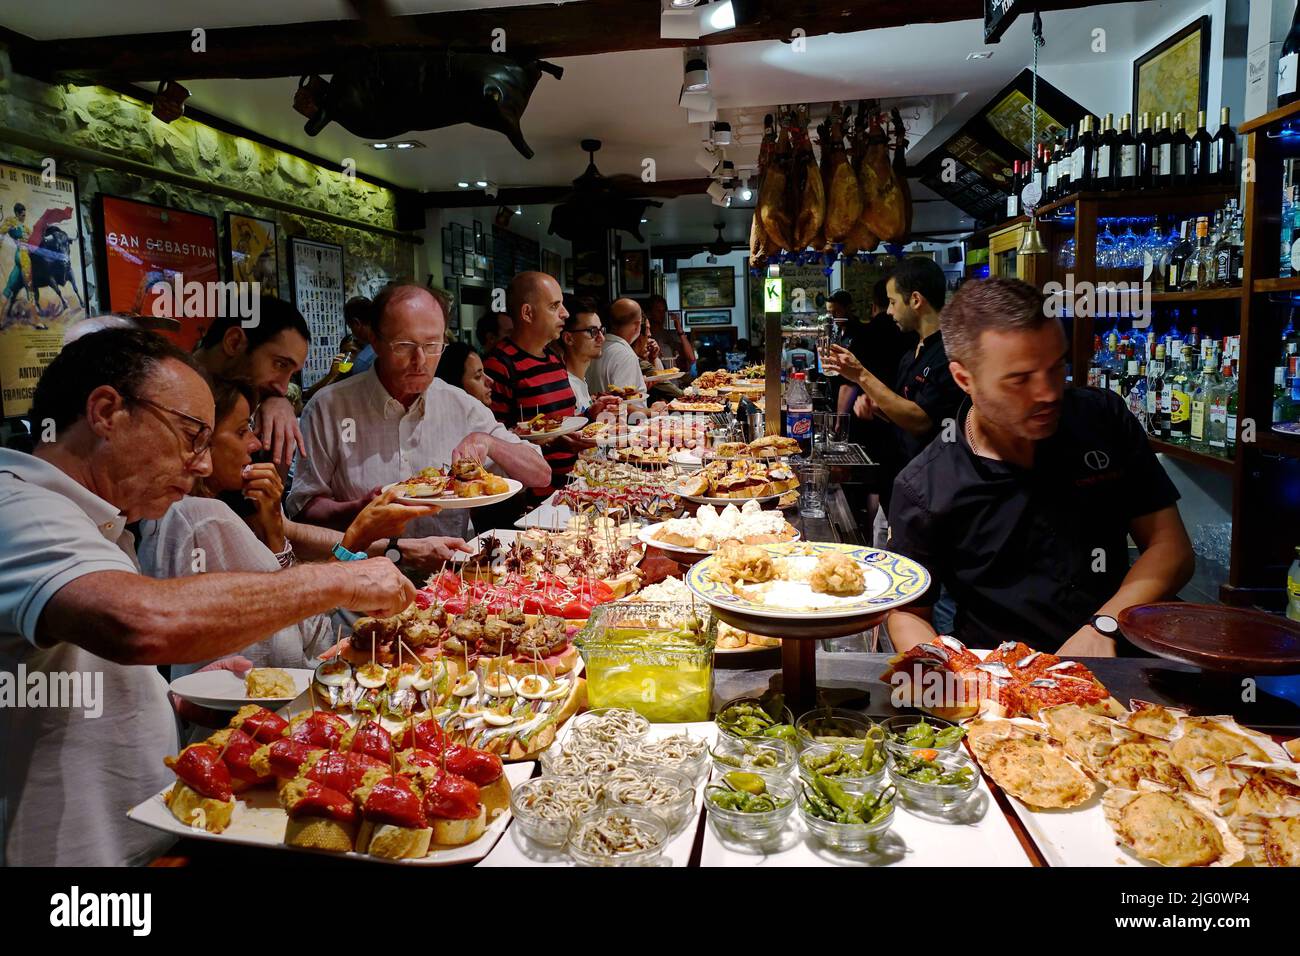 Un bar à tapas à San Sebastian avec de délicieux pintxos, les hors-d'œuvre traditionnels du pays Basque. Saint-Sébastien, Espagne - août 2018 Banque D'Images